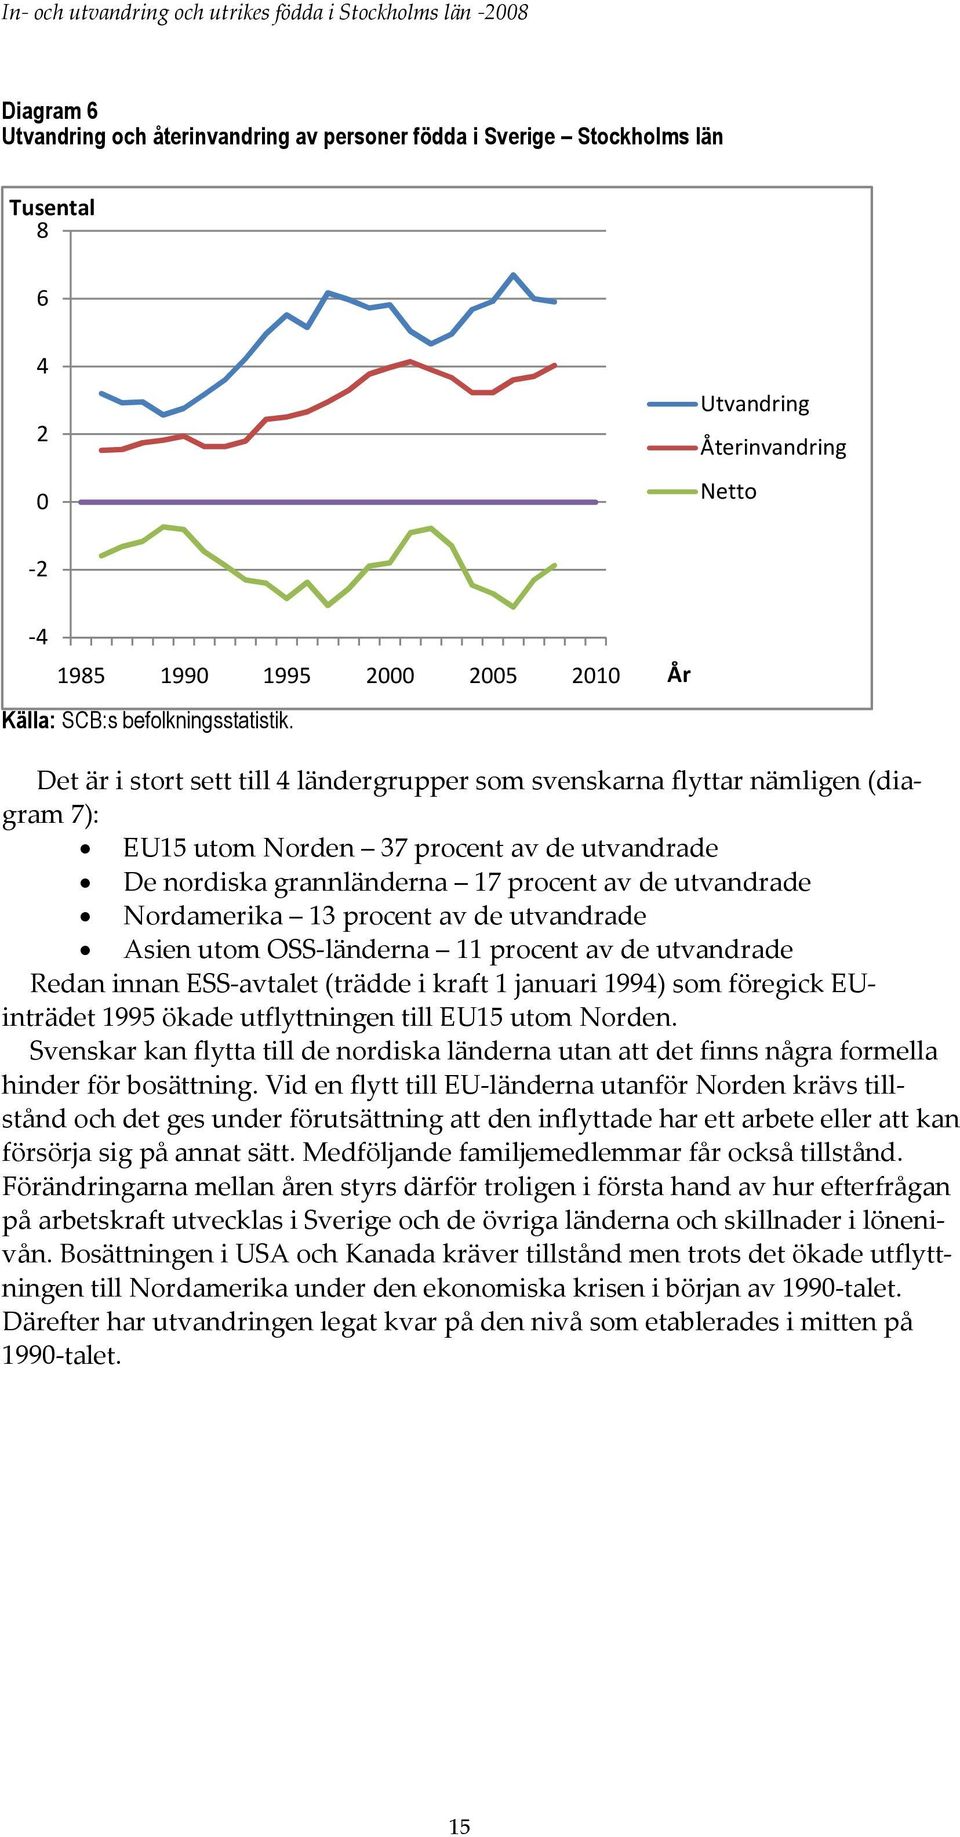 Det är i stort sett till 4 ländergrupper som svenskarna flyttar nämligen (diagram 7): EU15 utom Norden 37 procent av de utvandrade De nordiska grannländerna 17 procent av de utvandrade Nordamerika 13